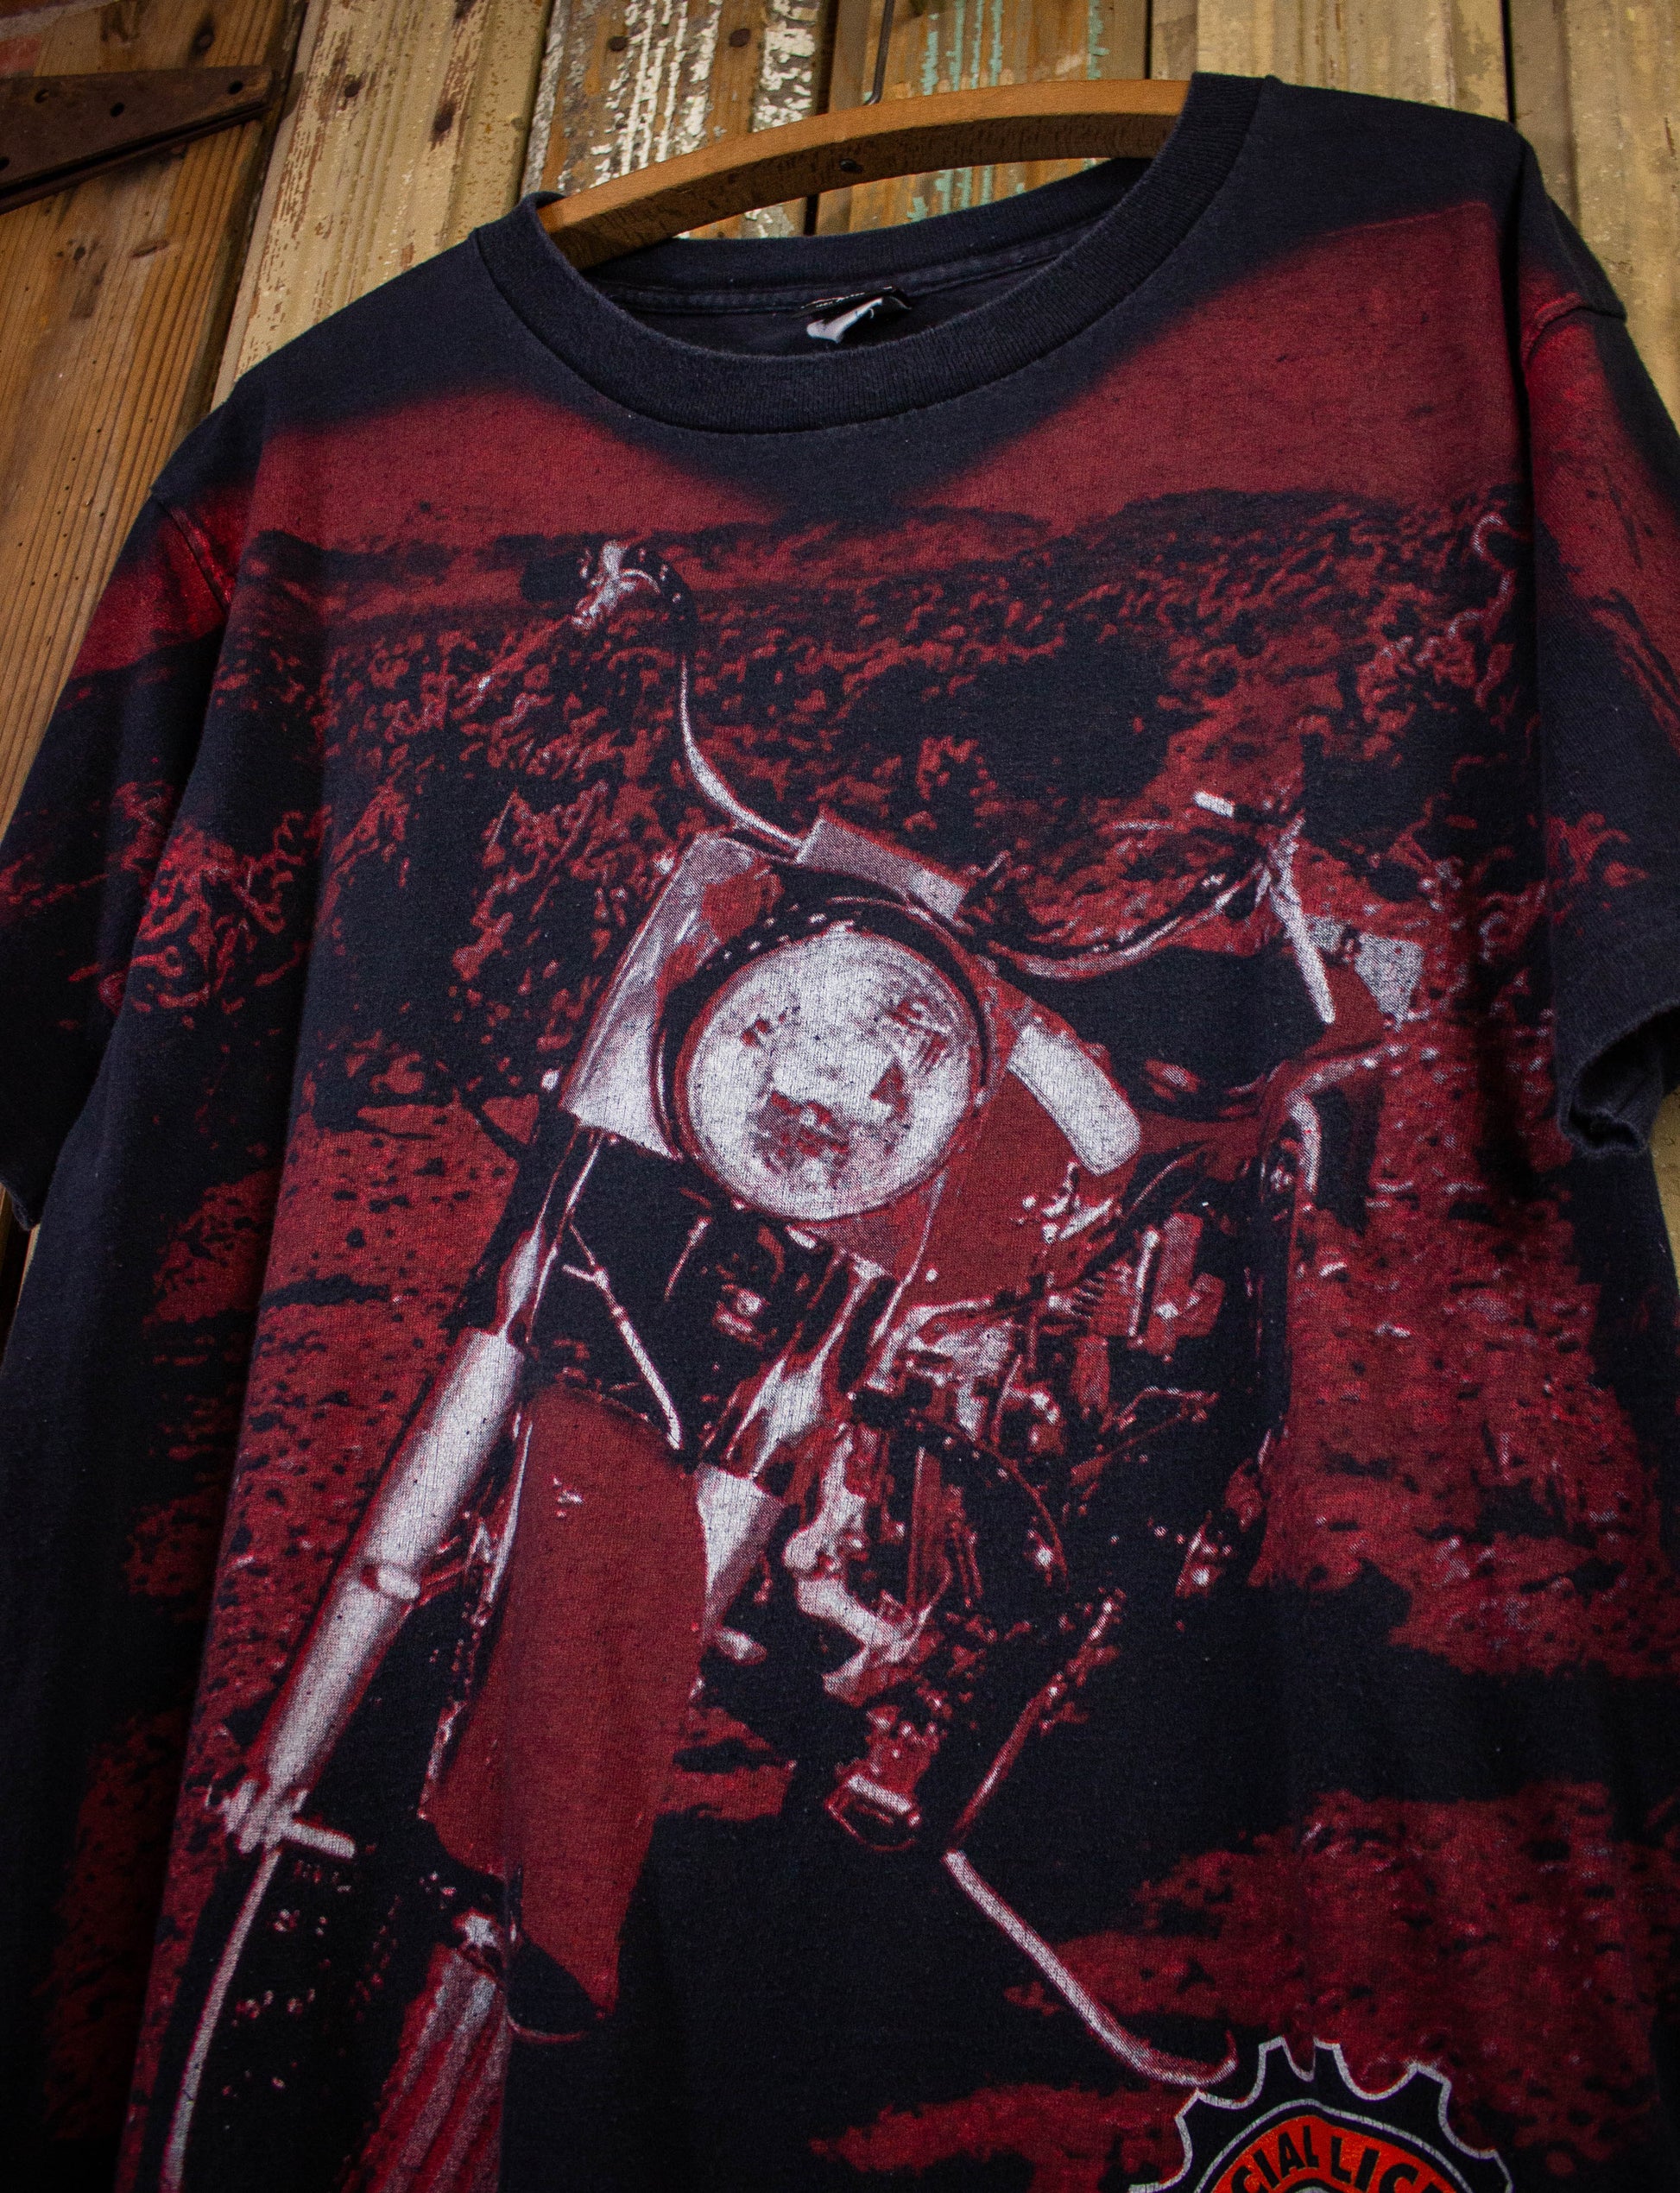 Vintage Harley Davidson AOP Bike Image Graphic T Shirt 1996 Black Large